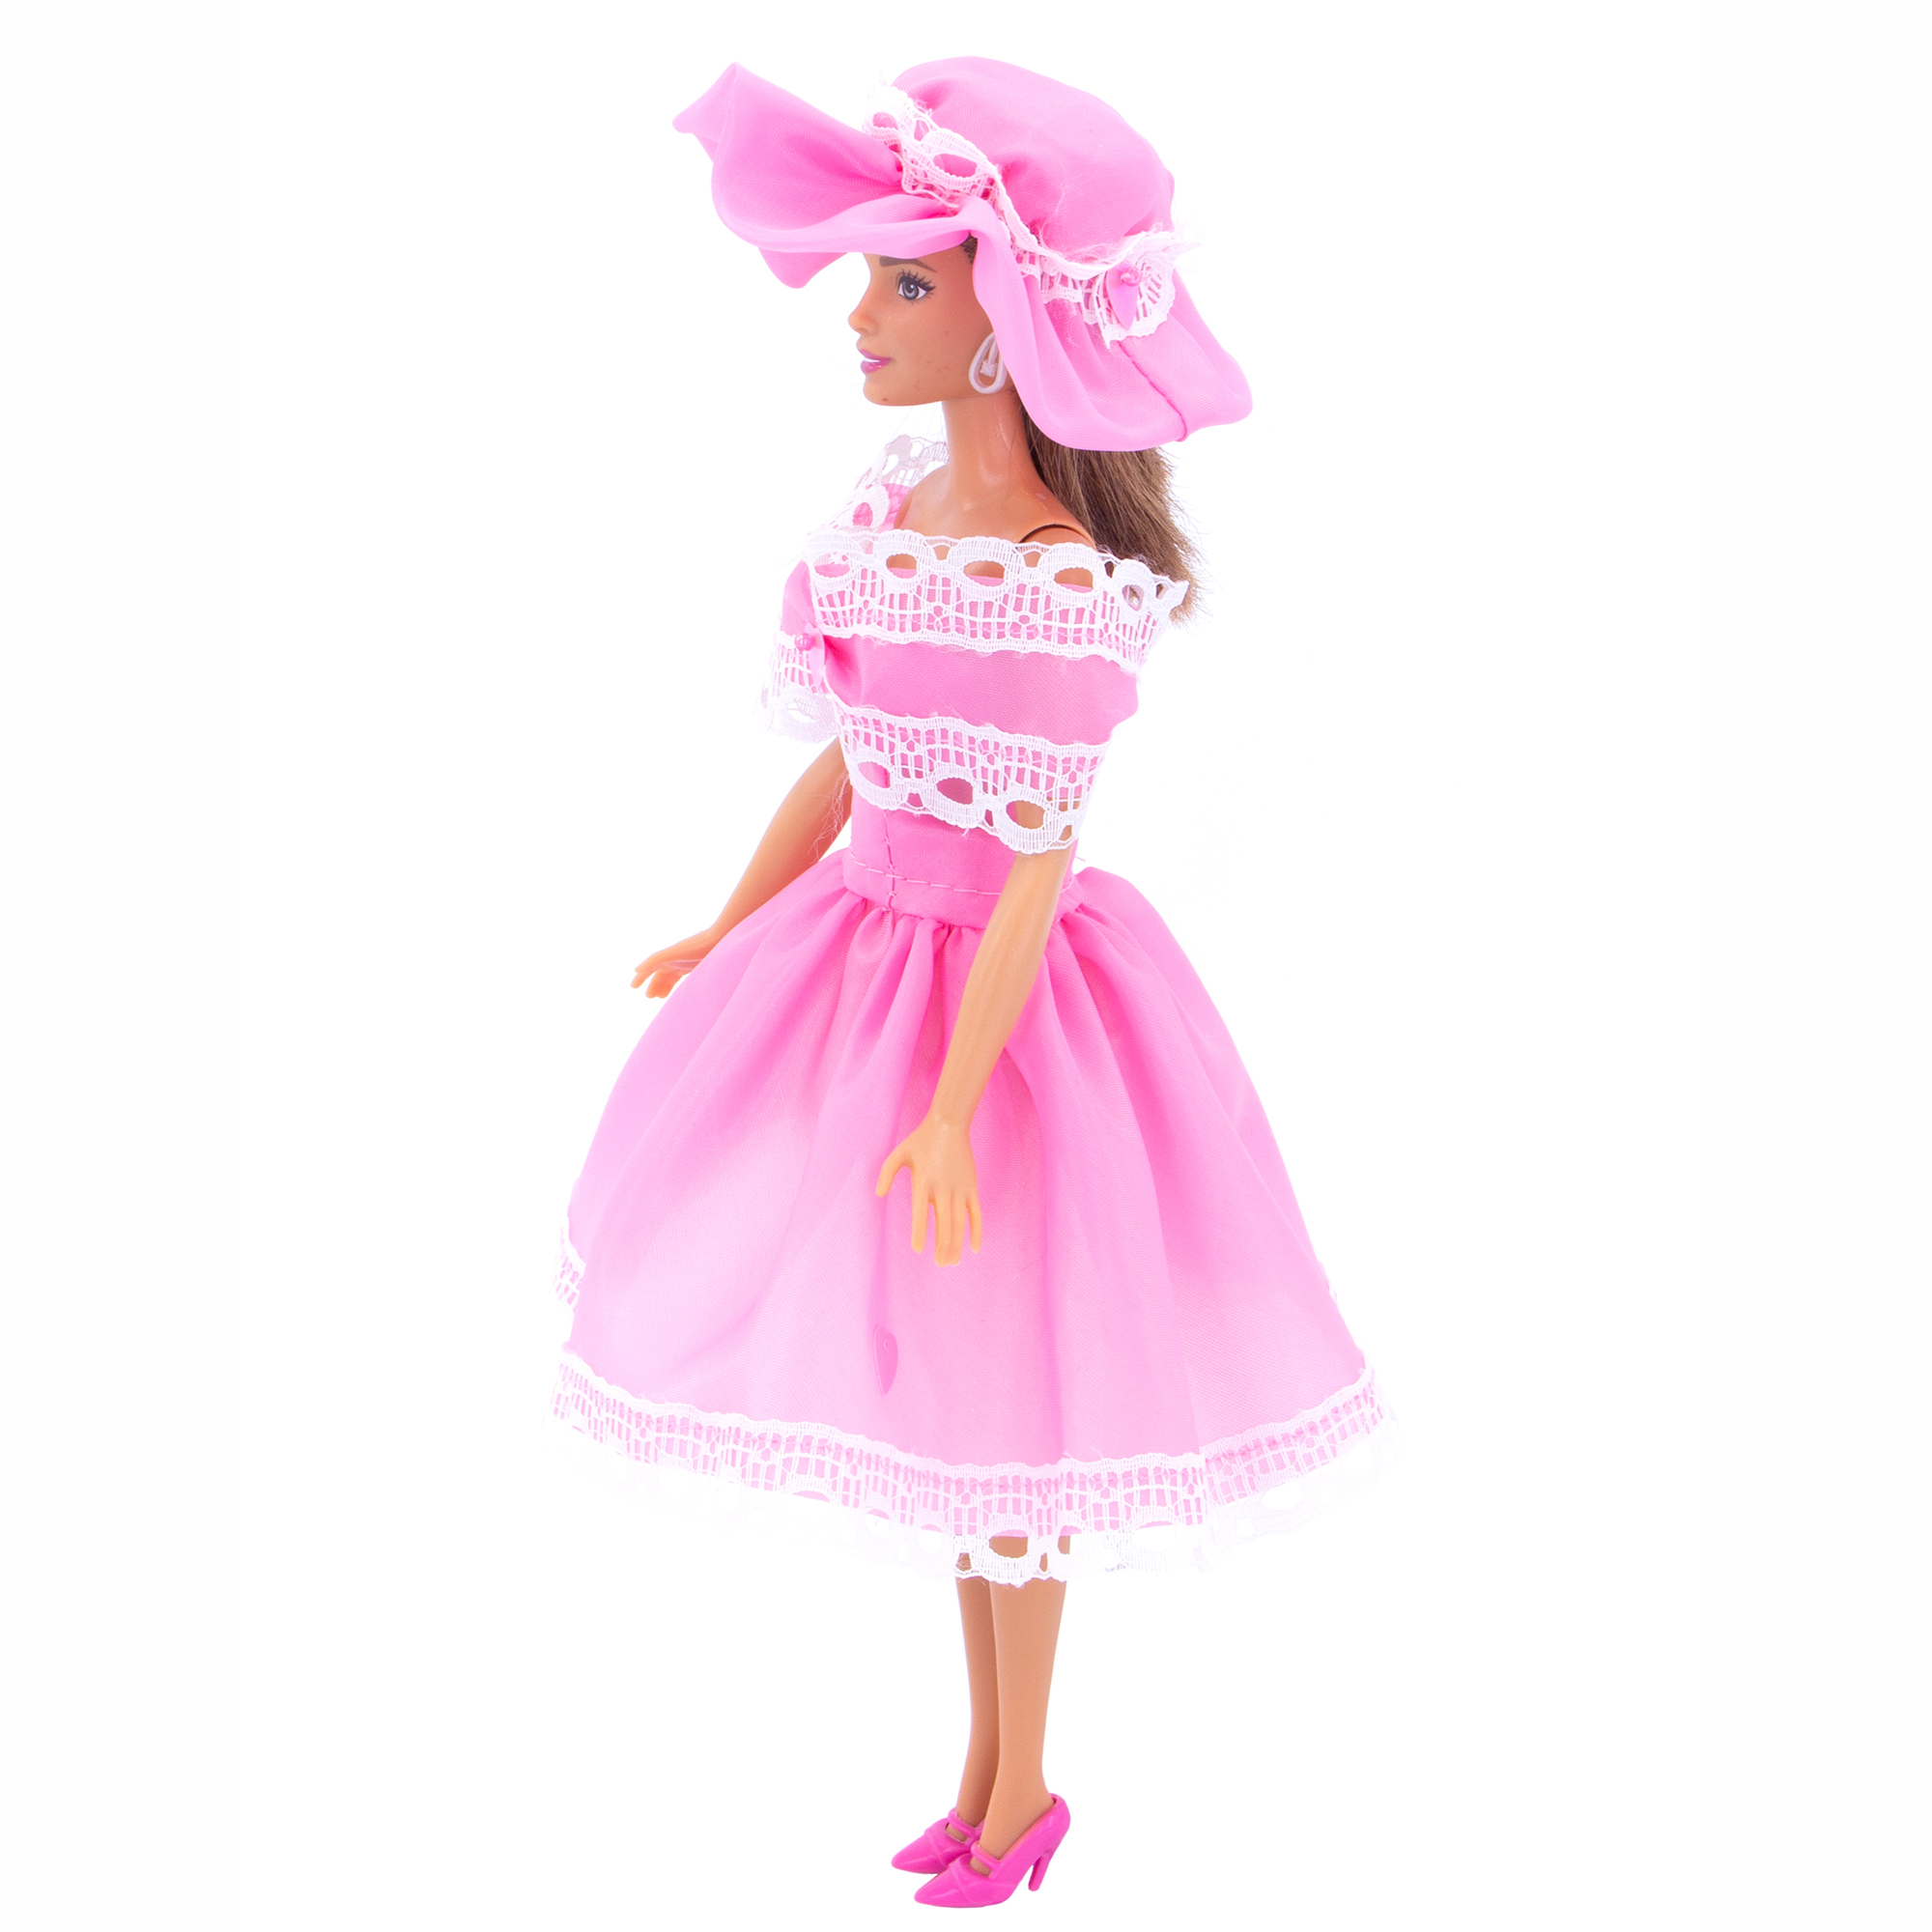 Легкое платье из шелка Модница для куклы 29 см 1401 розовый 1401розовый - фото 6